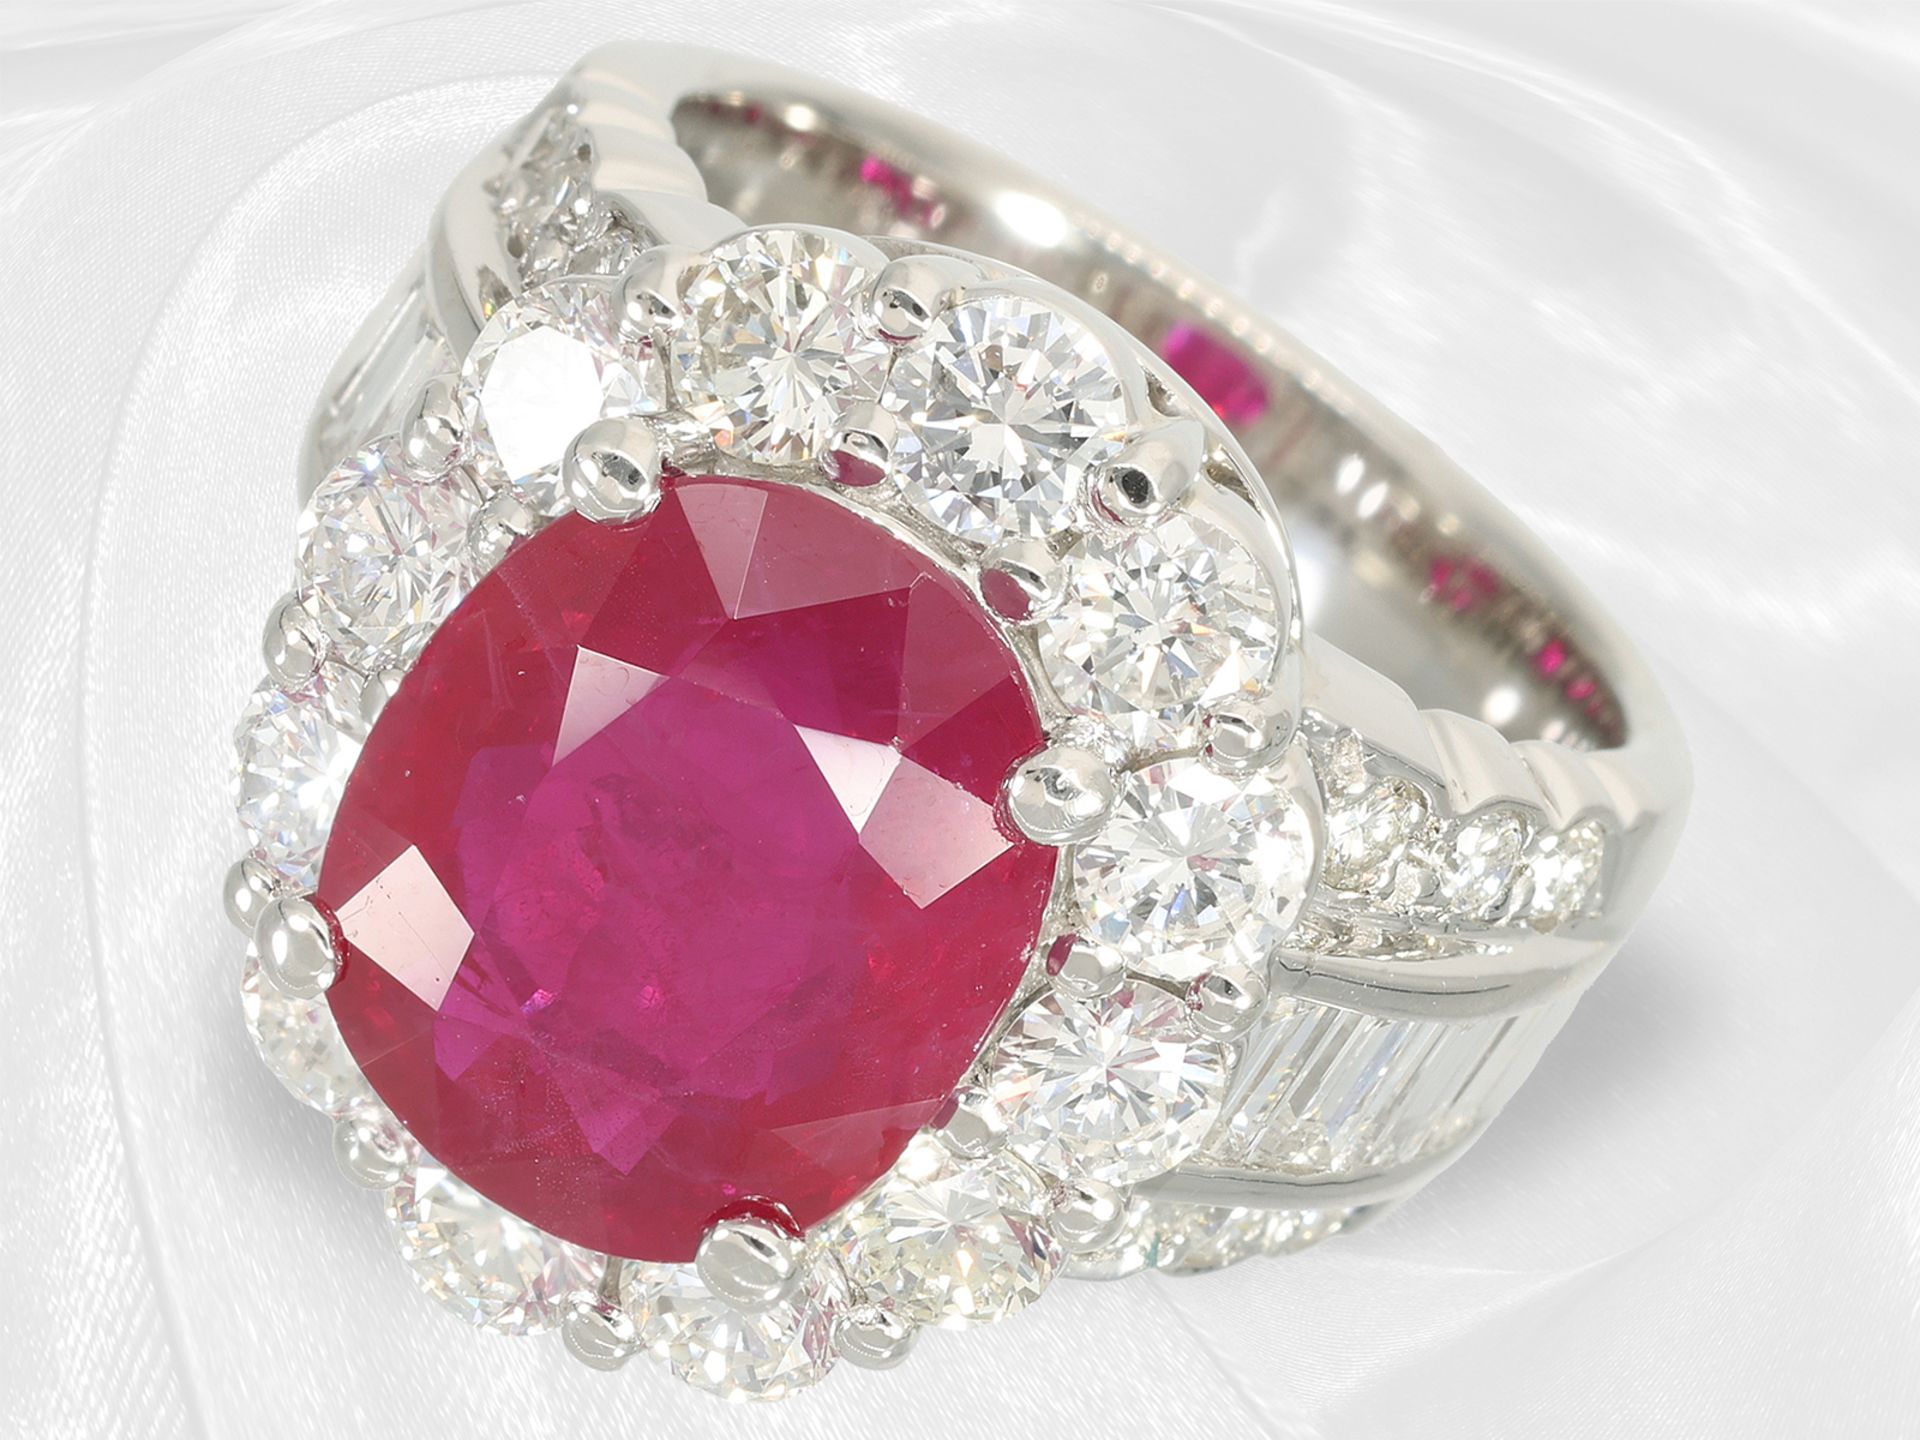 Ring: ehemals sehr teurer Platinring mit natürlichem Burma-Rubin von 7,18ct, GIA Zertifikat